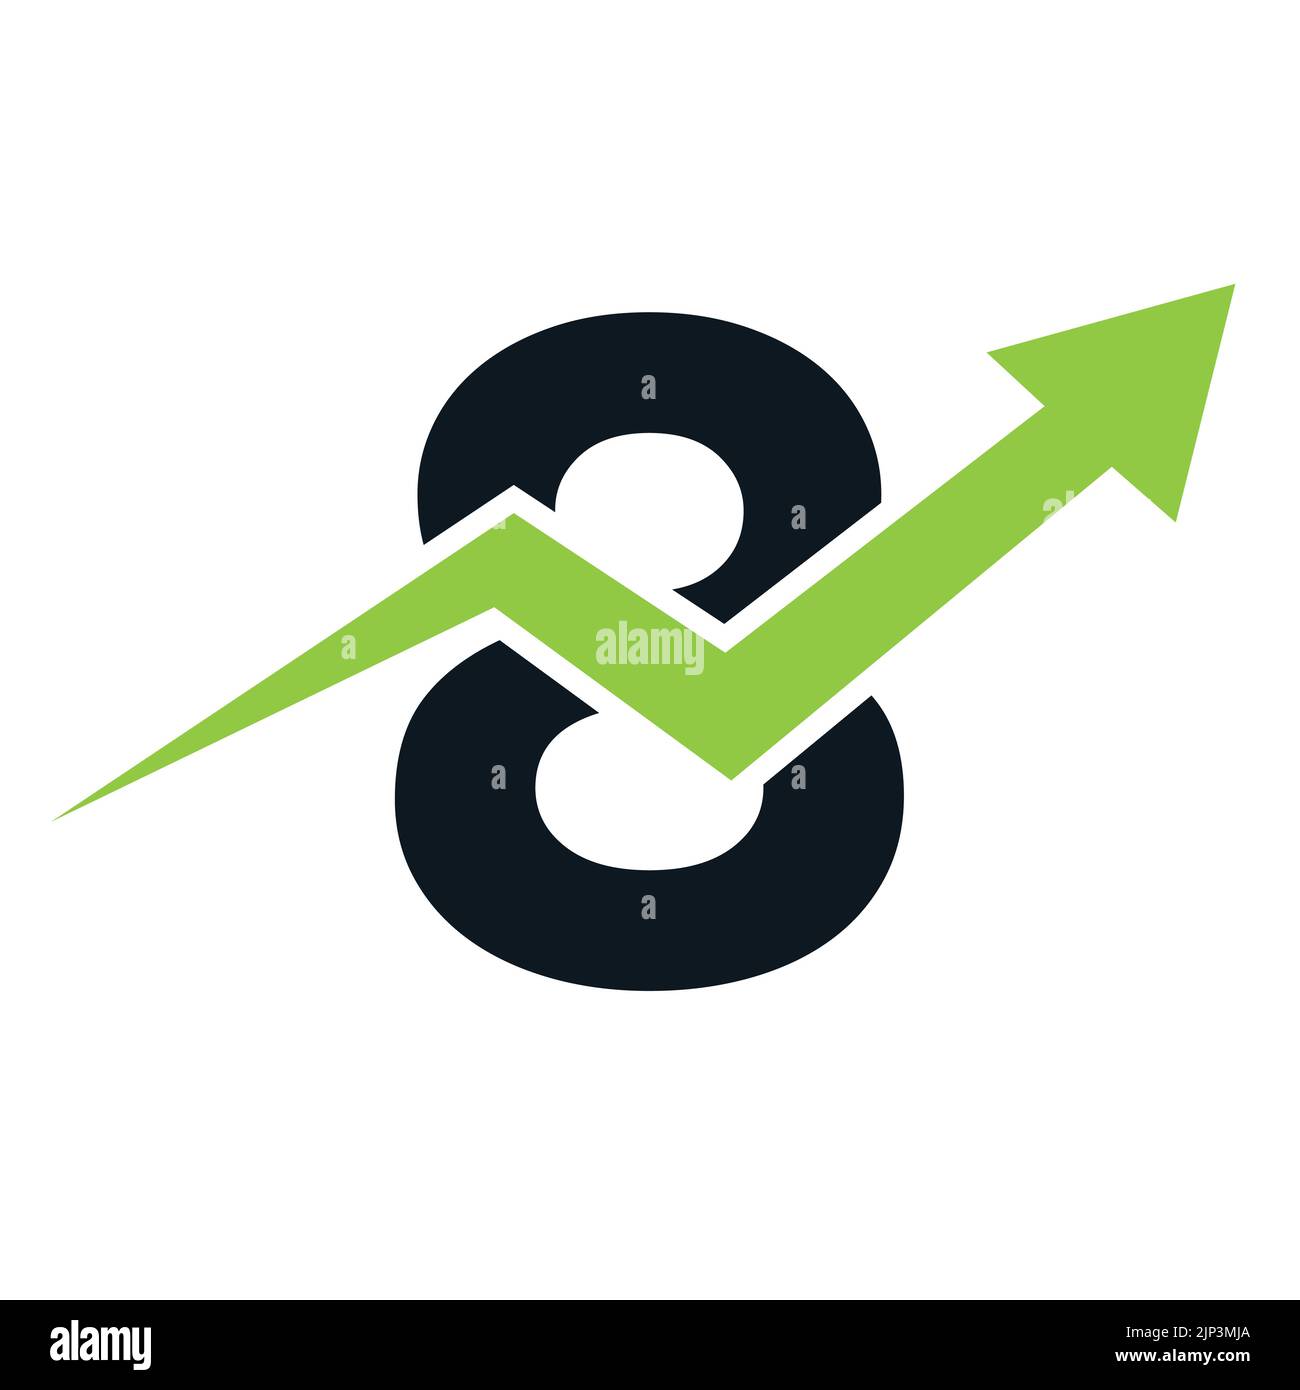 Logo financier lettre 8. Concept de modèle de logo Finance et développement de l'investissement financier avec flèche de croissance des entreprises Illustration de Vecteur